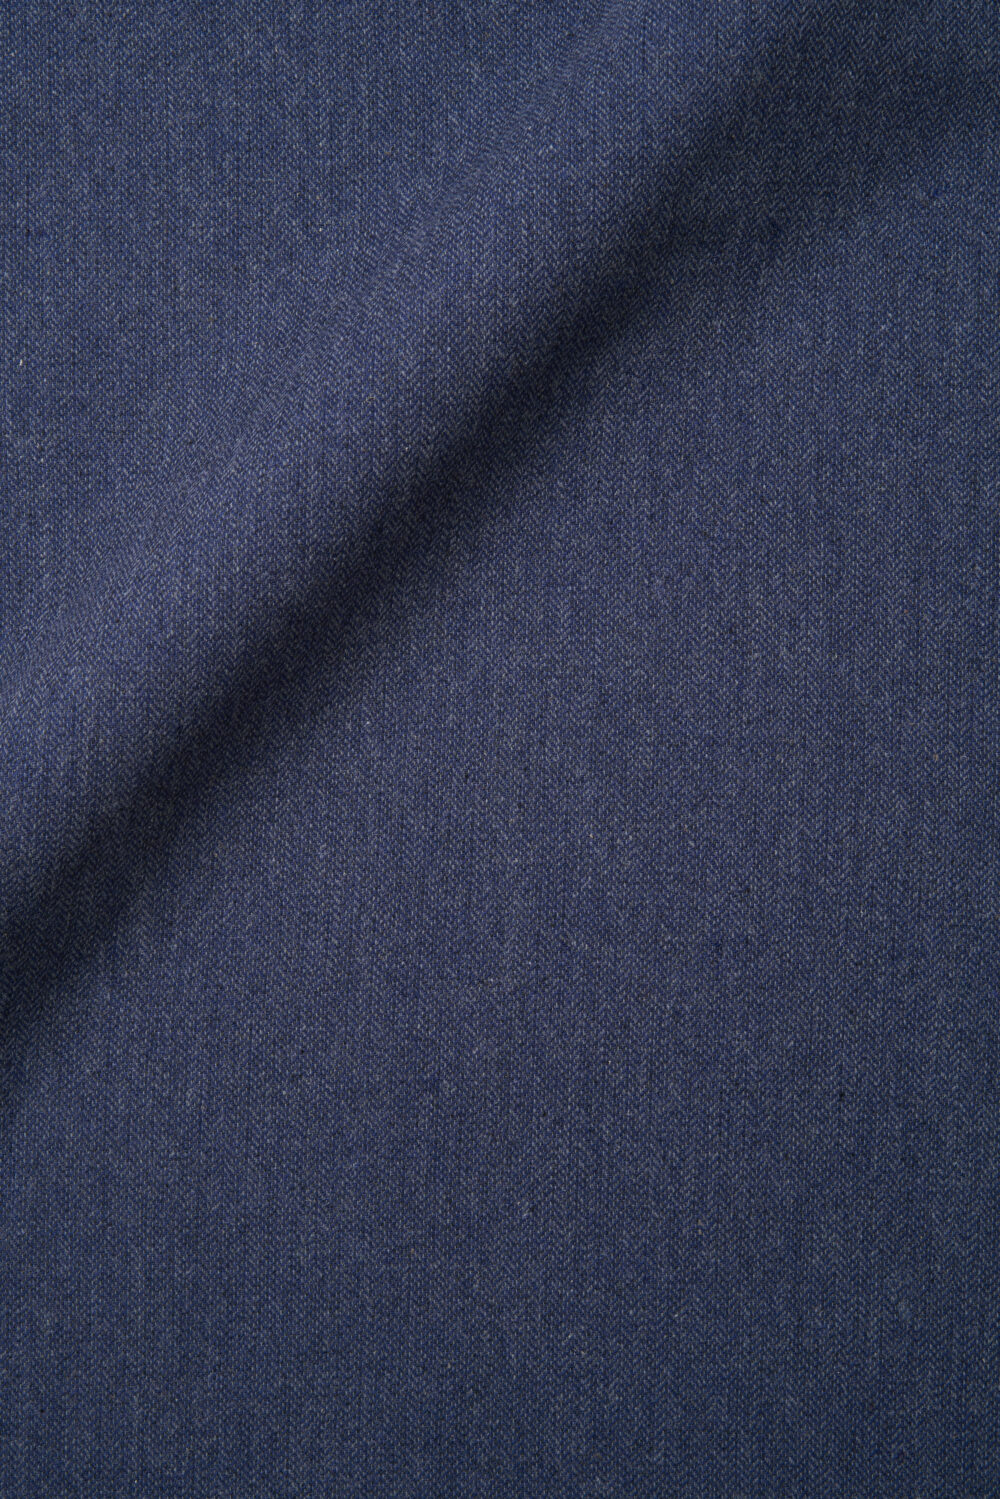 Vyriškos mėlynos kelnės įvairių spalvų KEL20